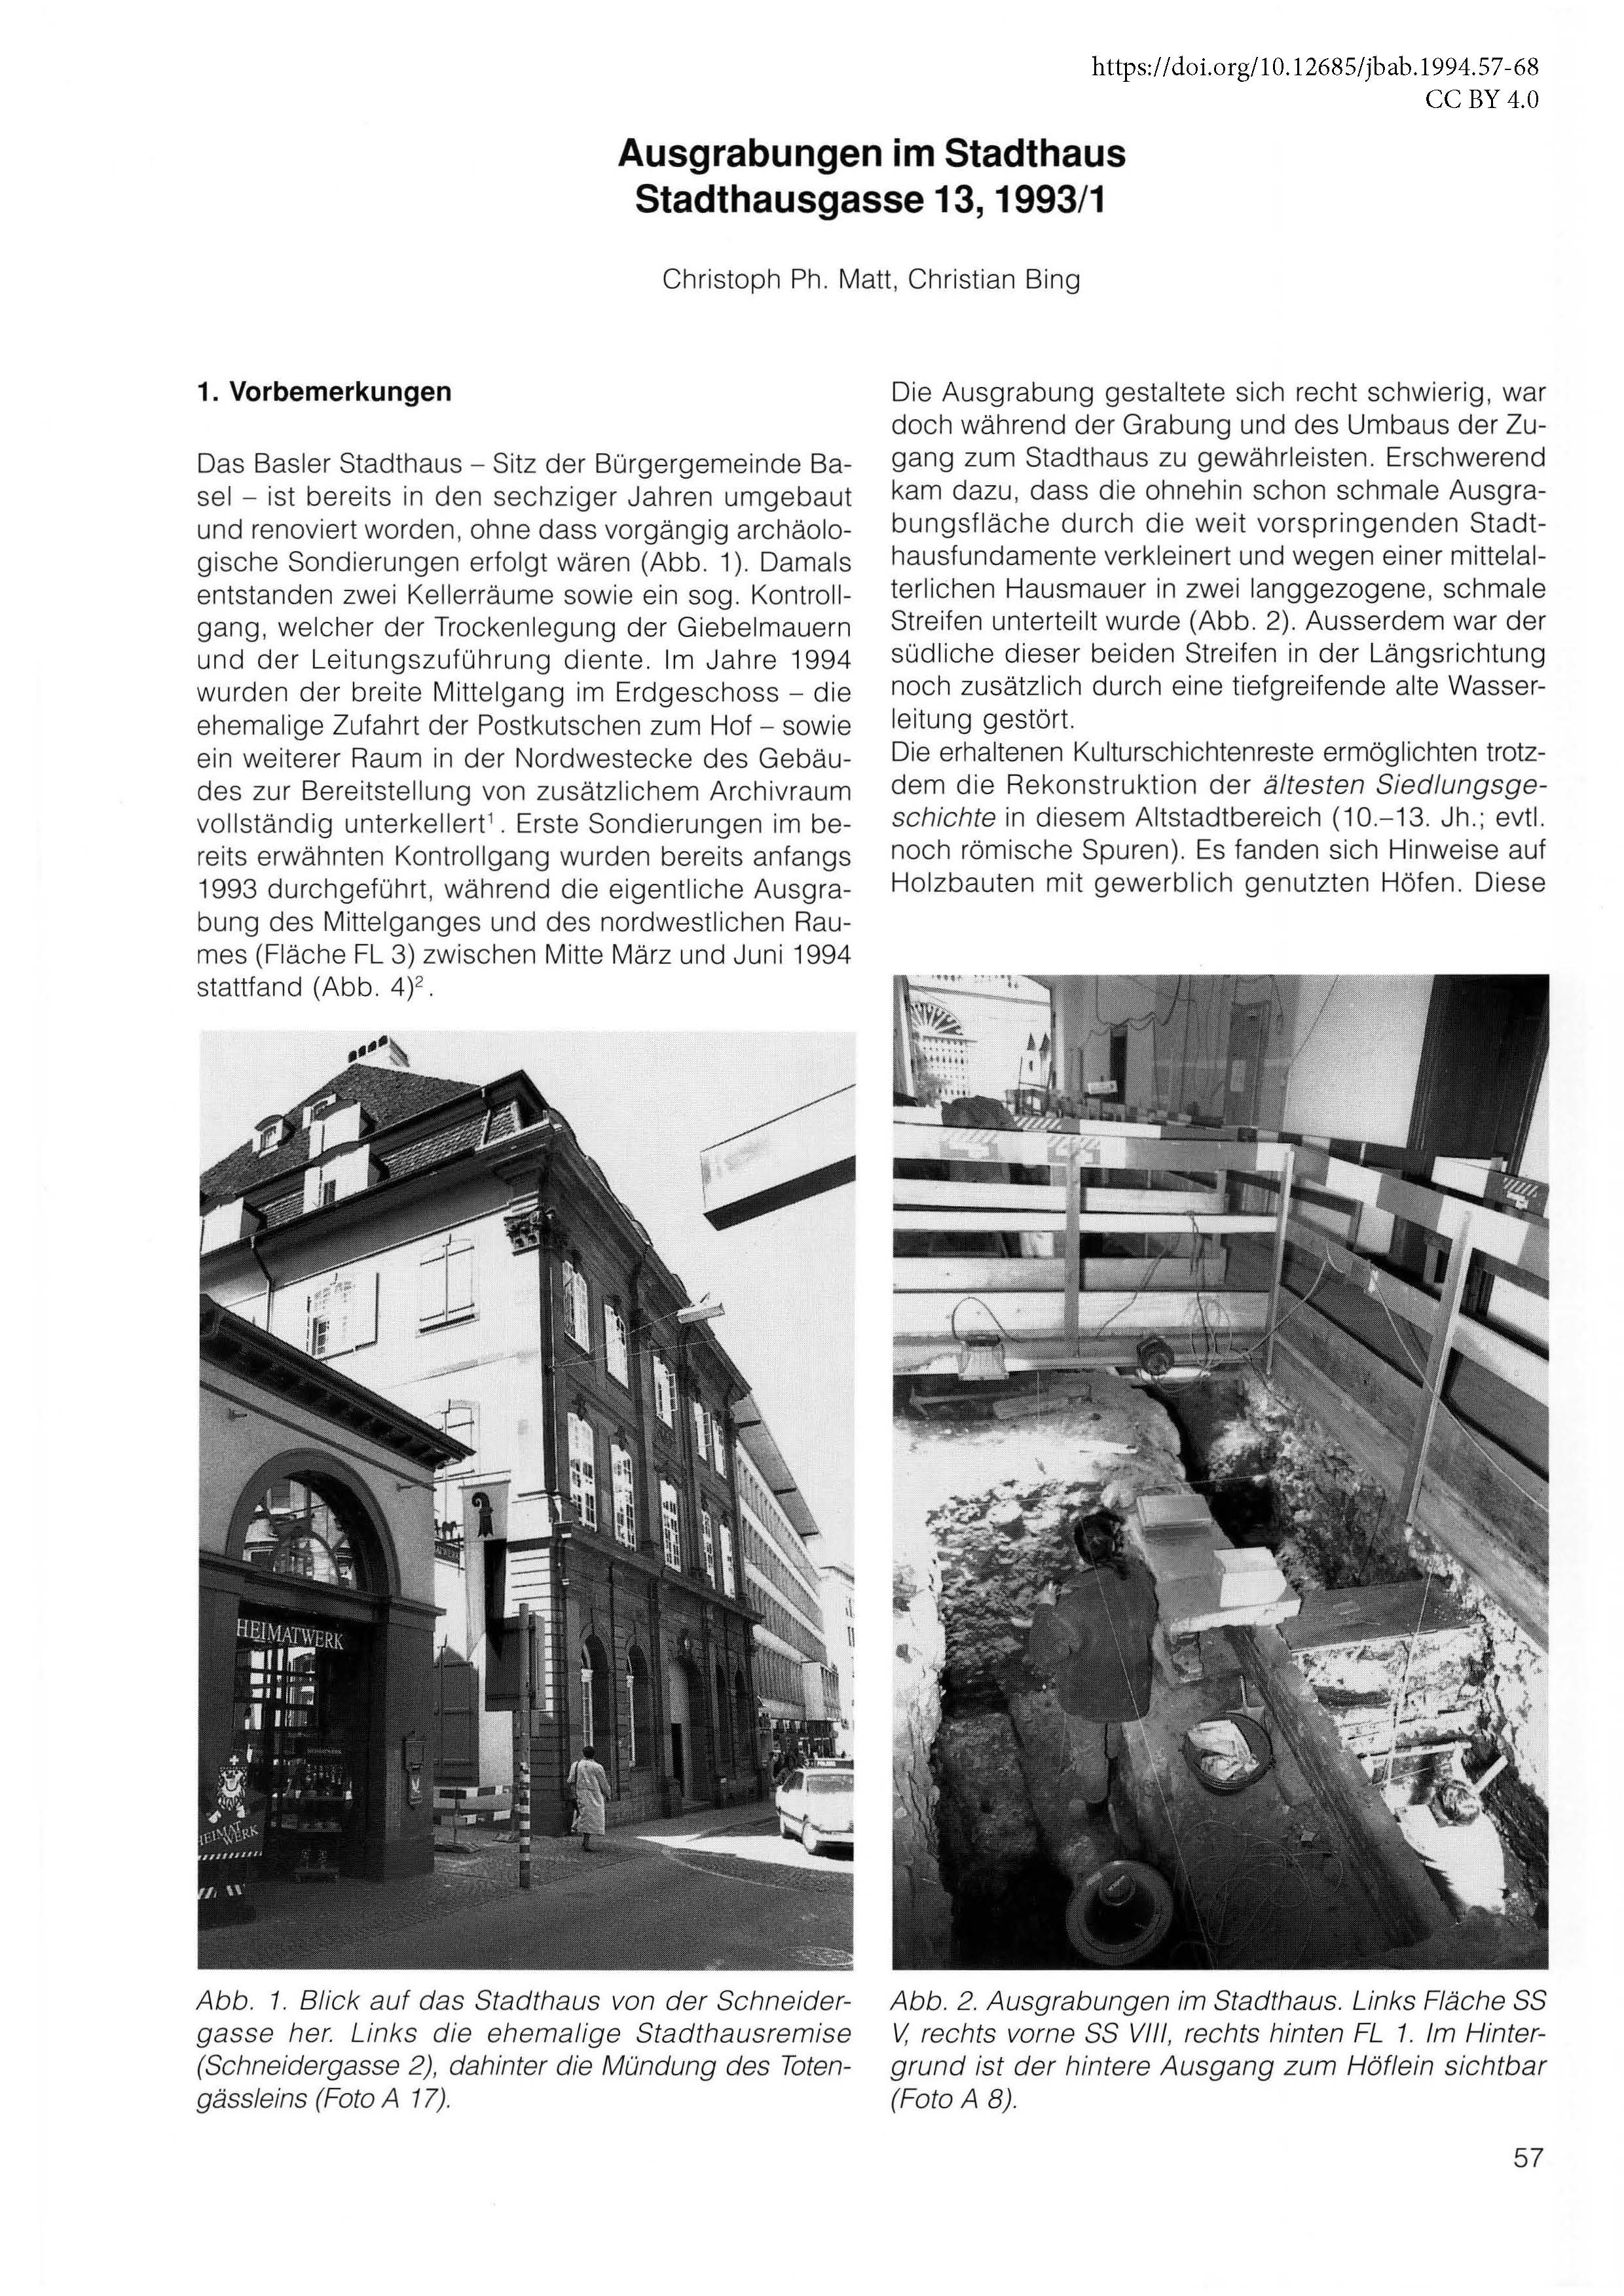 Erste Seite des Artikels über die Ausgrabungen im Stadthaus